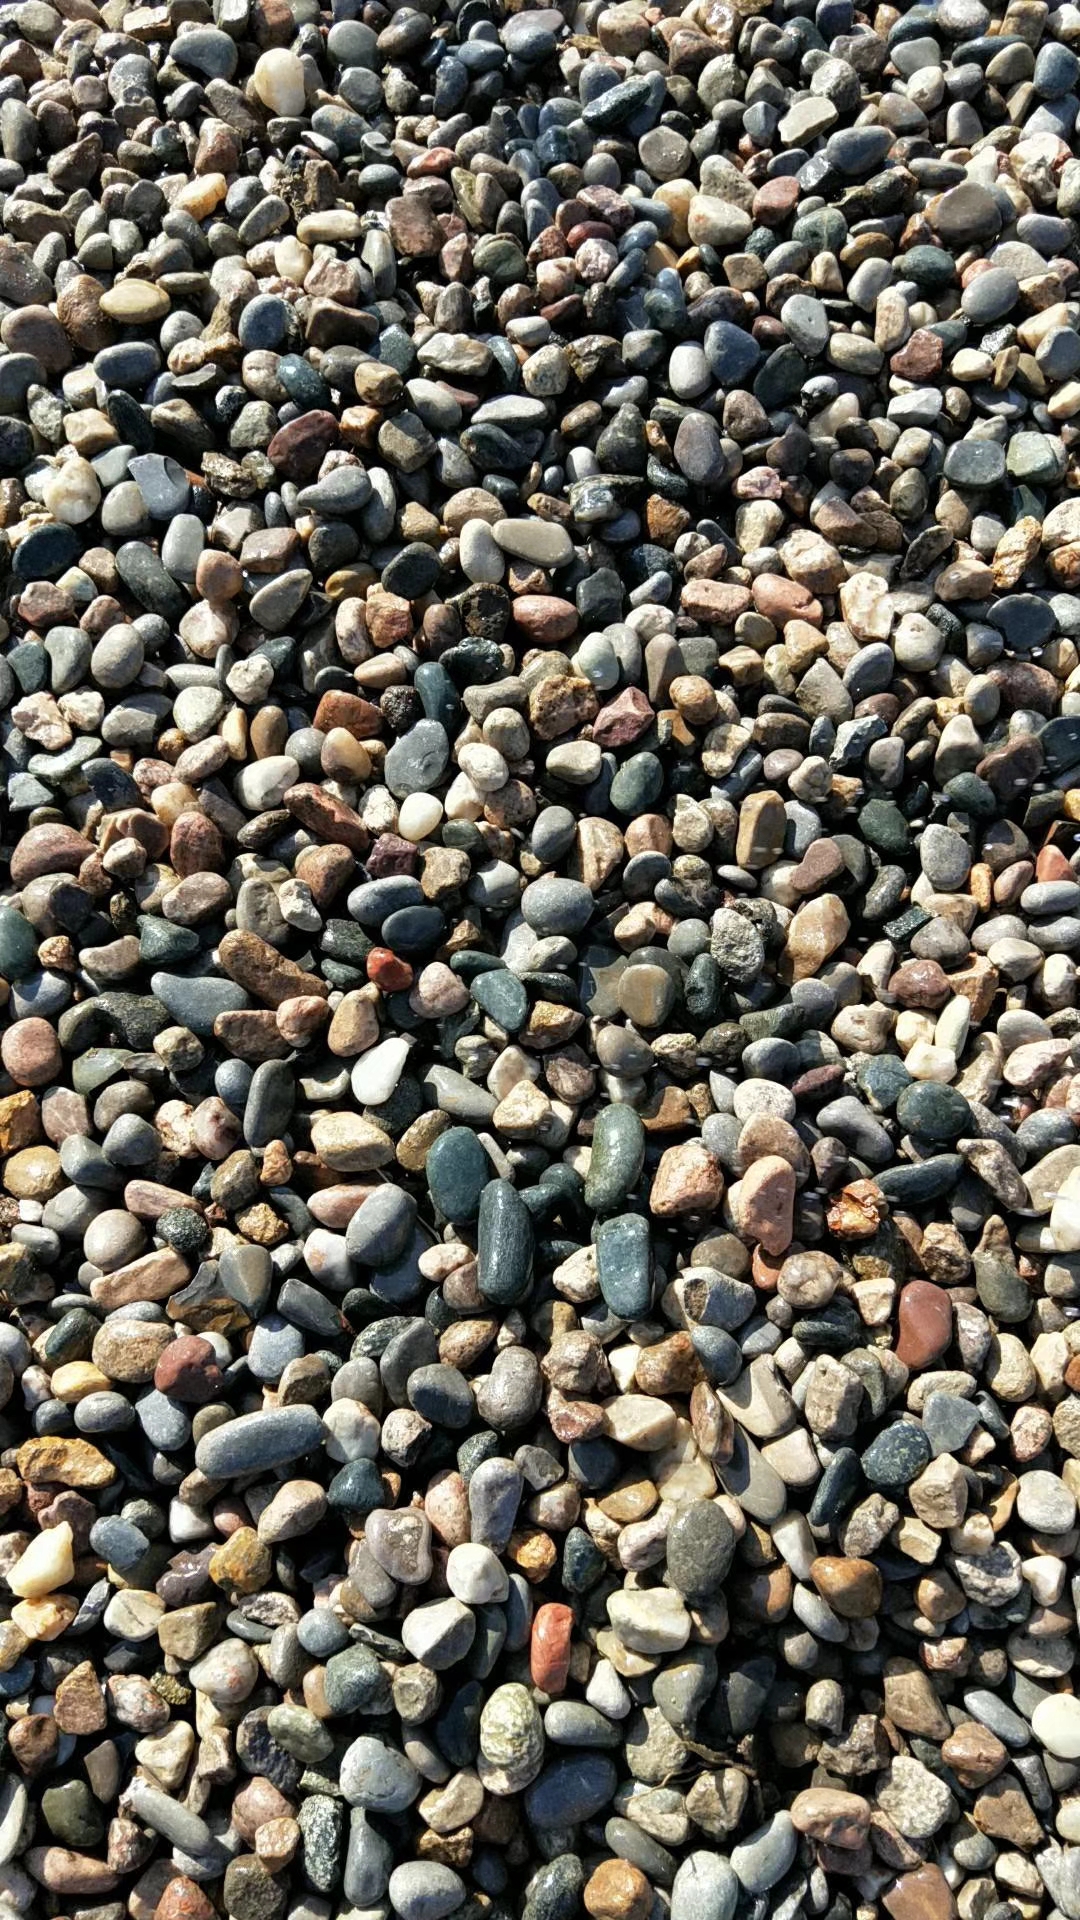 大卵石海浪石开采基地 鹅卵石多少钱一吨 鹅卵石哪里有卖 临沂哪里有鹅卵石 临沂哪里有鹅卵石的   临沂哪里有卖鹅卵石